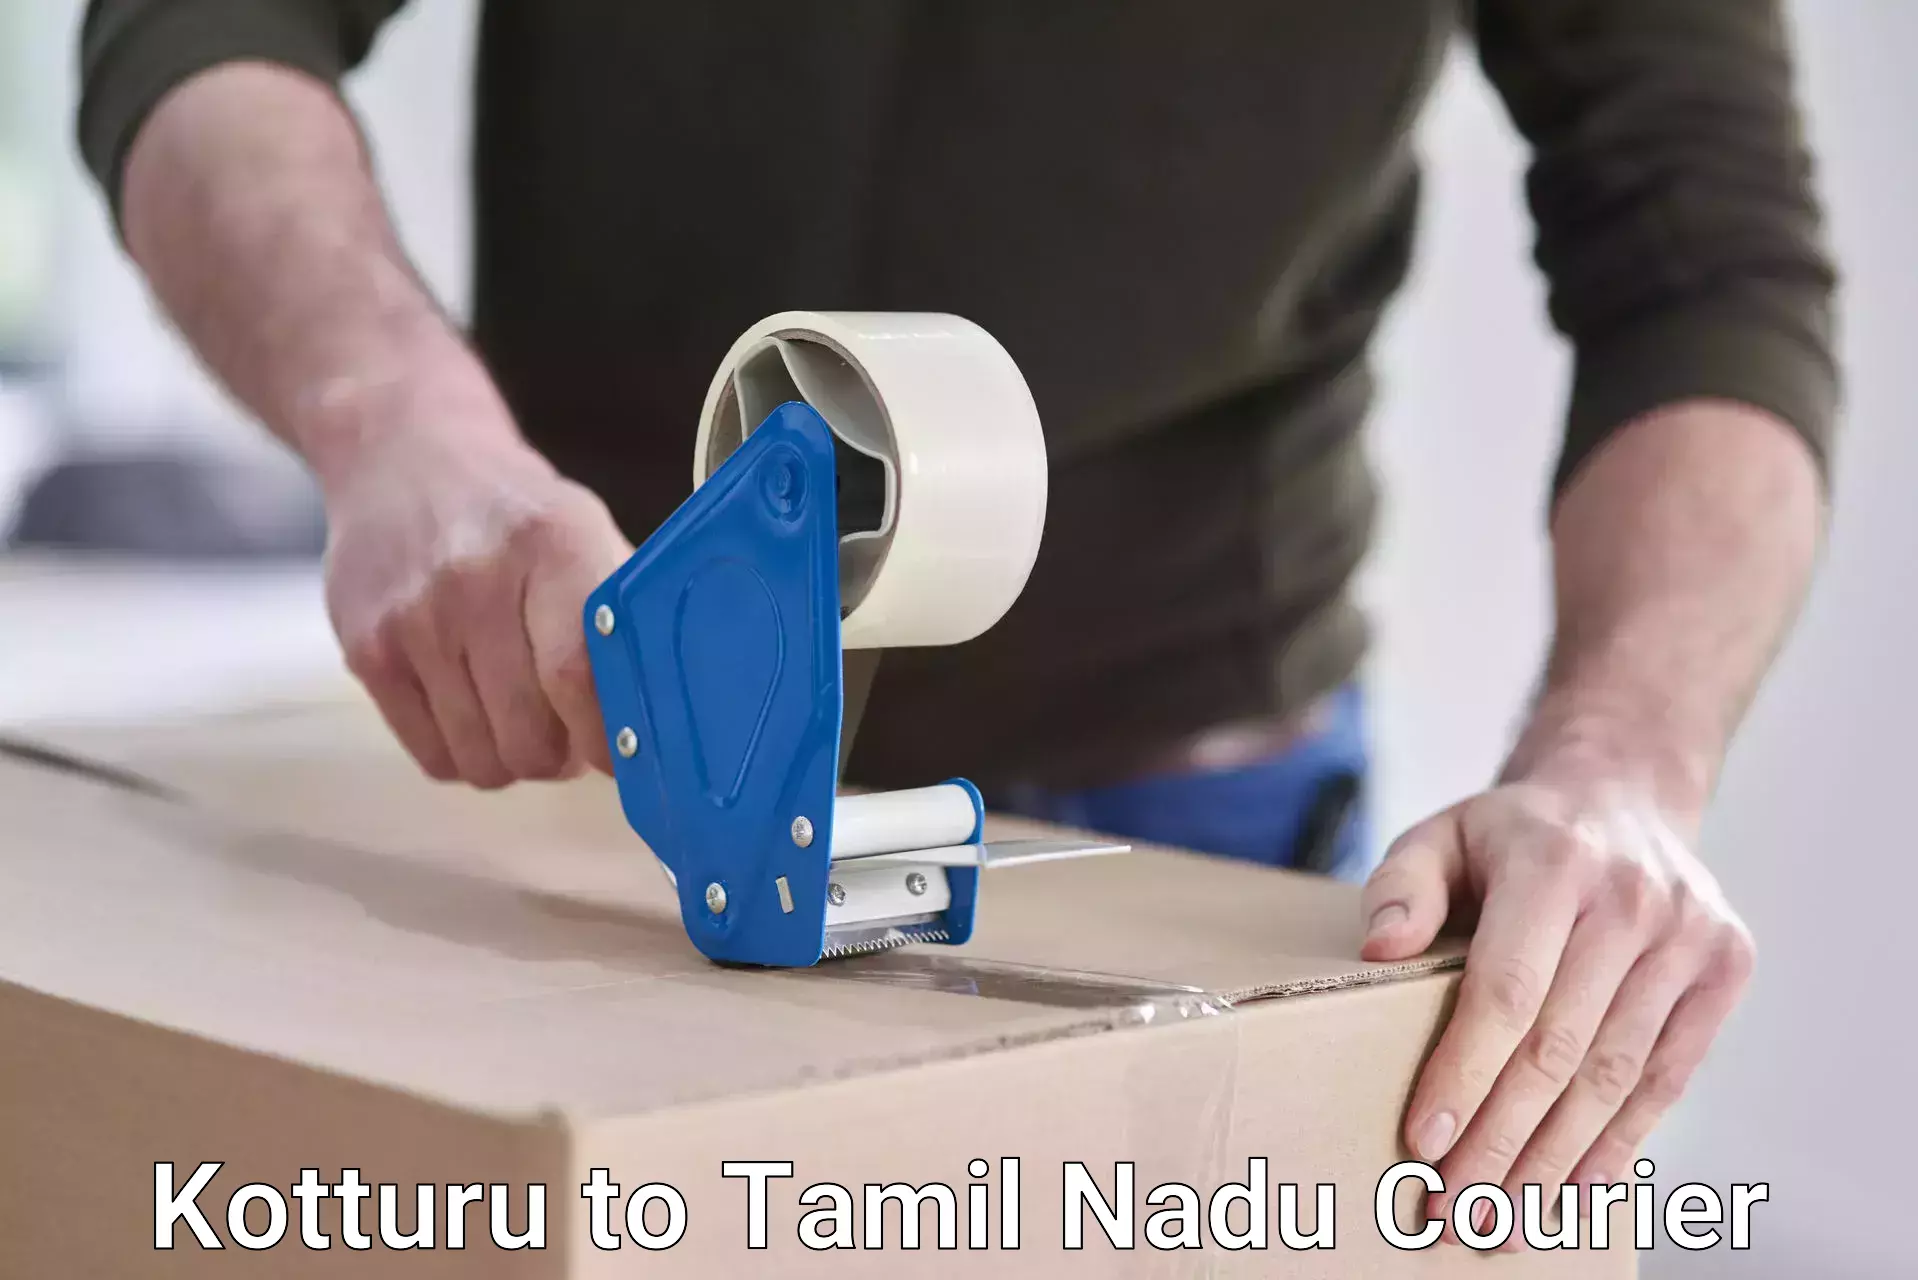 Courier services Kotturu to Tamil Nadu